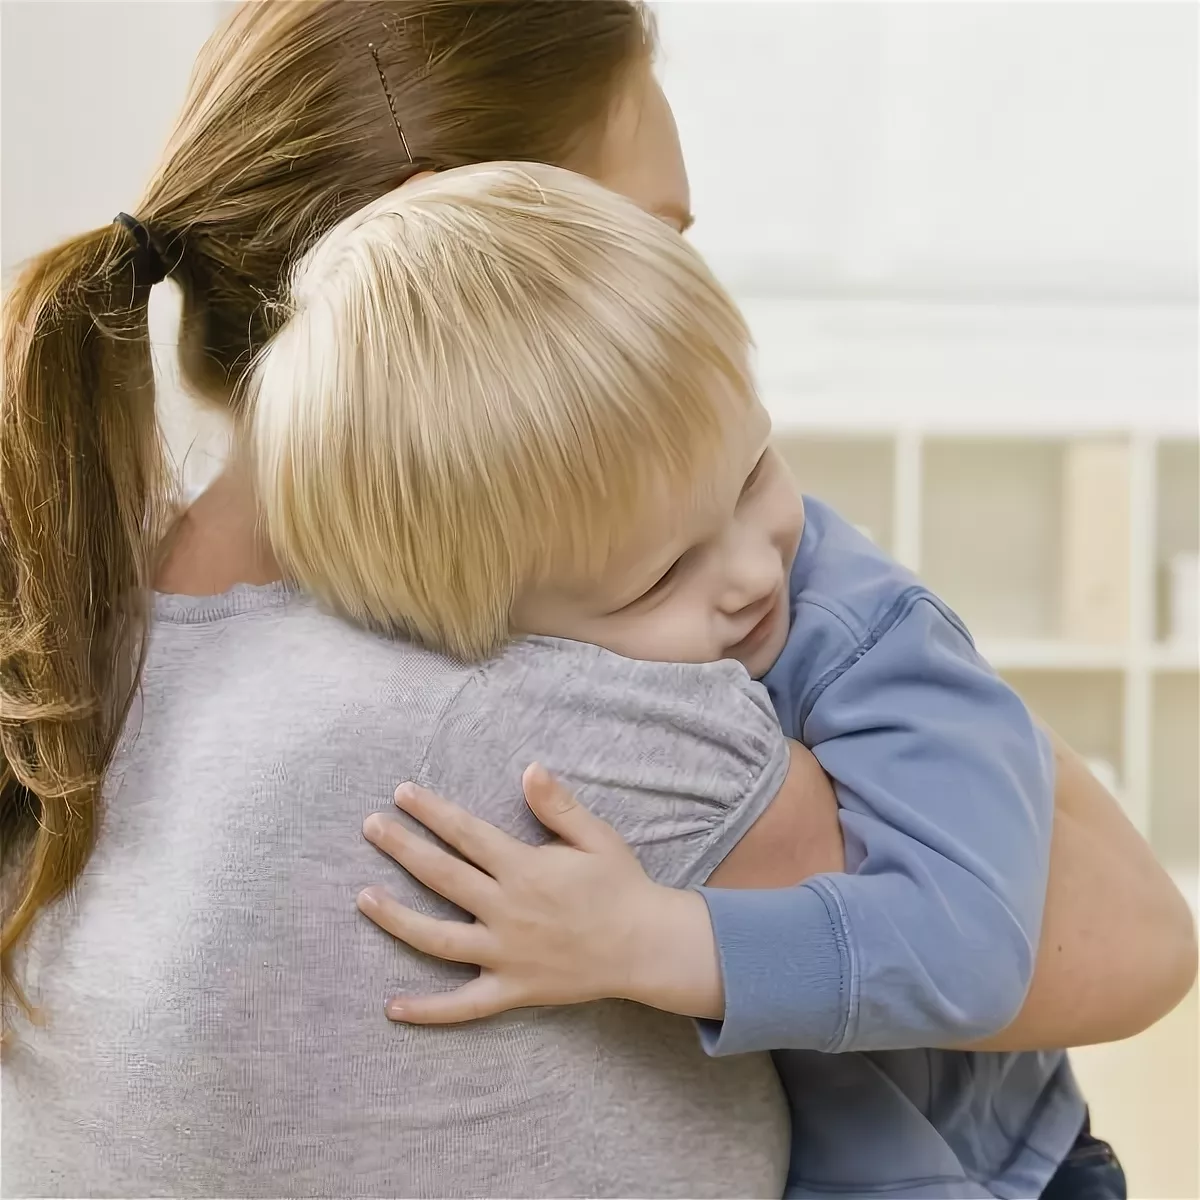 Обнимает ребенка. Объятия детей и родителей. Фото мамы обнимающей своего ребенка